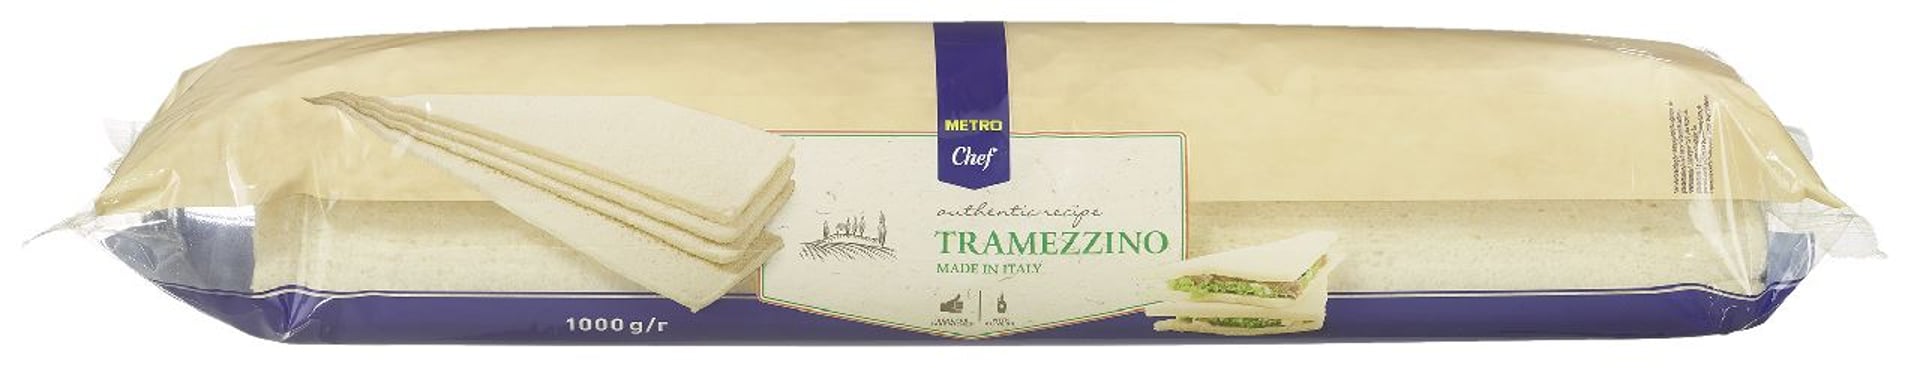 METRO Chef - Pane Tramezzino - 1 kg Packung